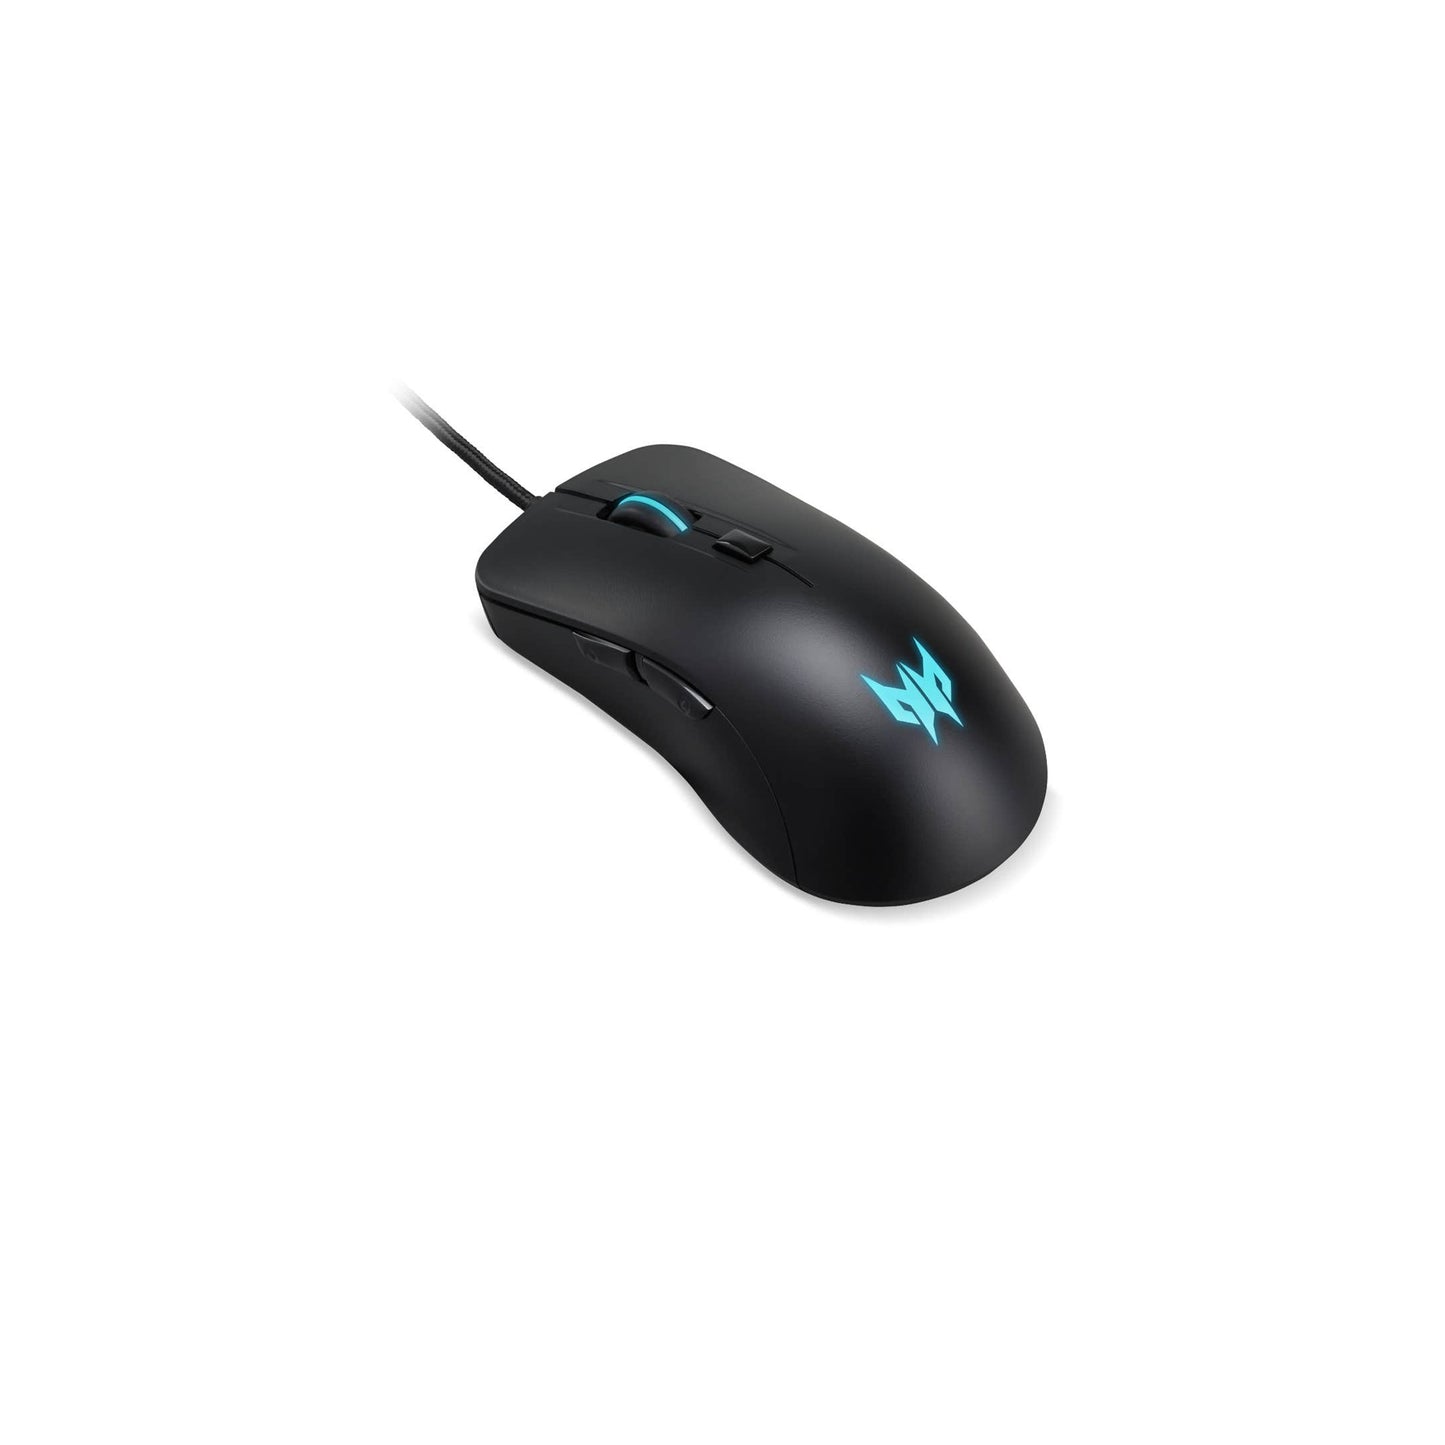 Predator Cestus 310 Gaming Mouse